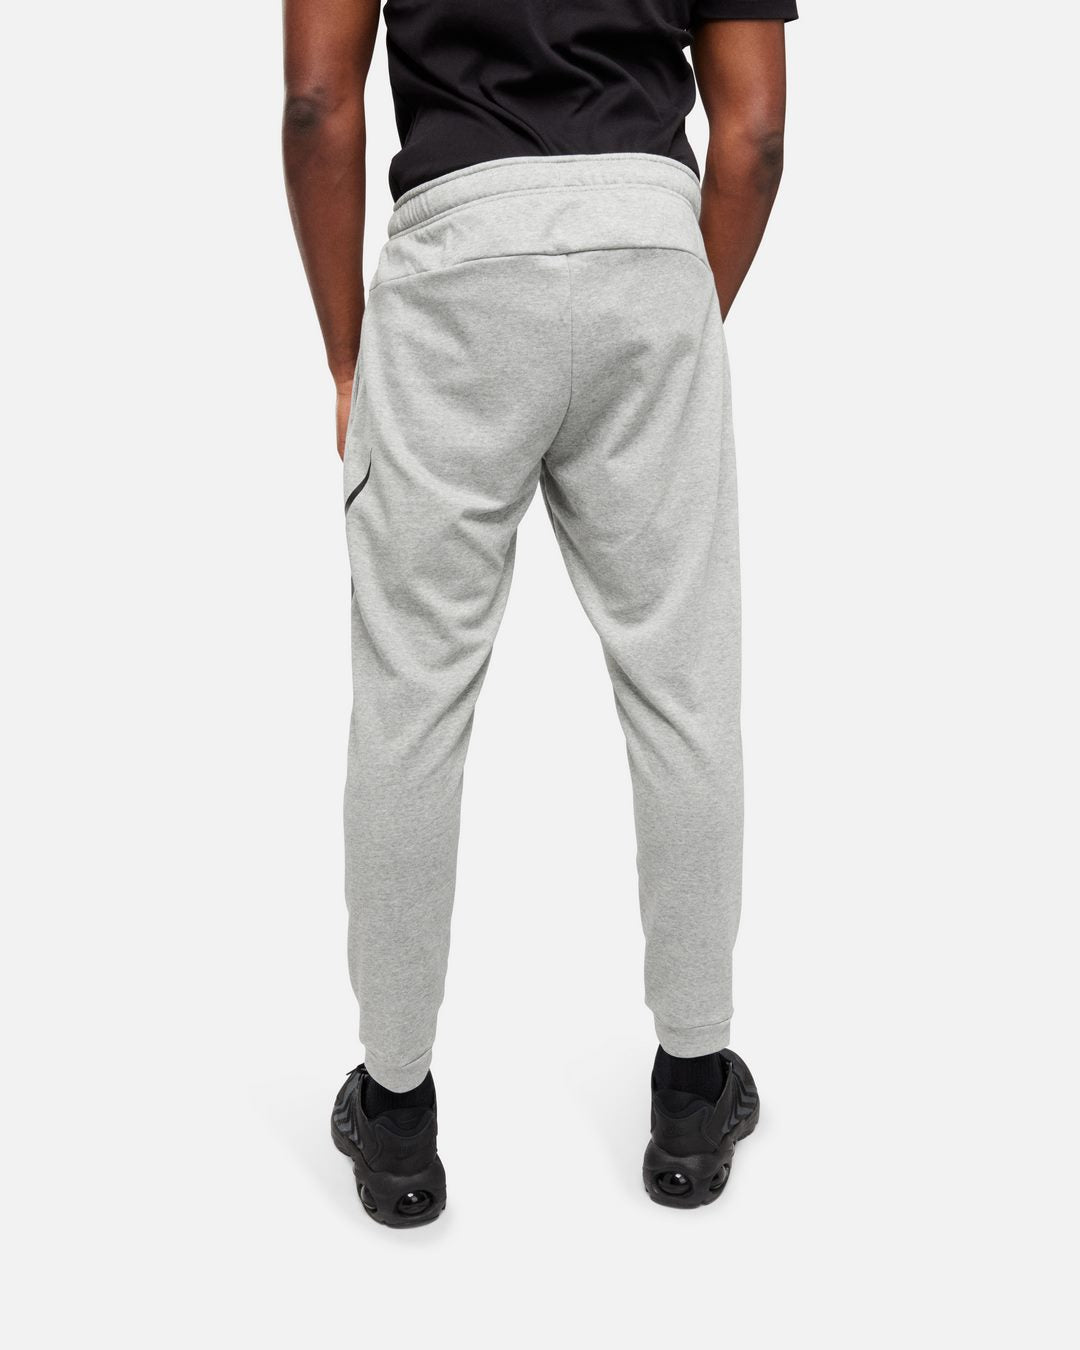 Pantalon Nike Dry Graphic – Grau/Schwarz